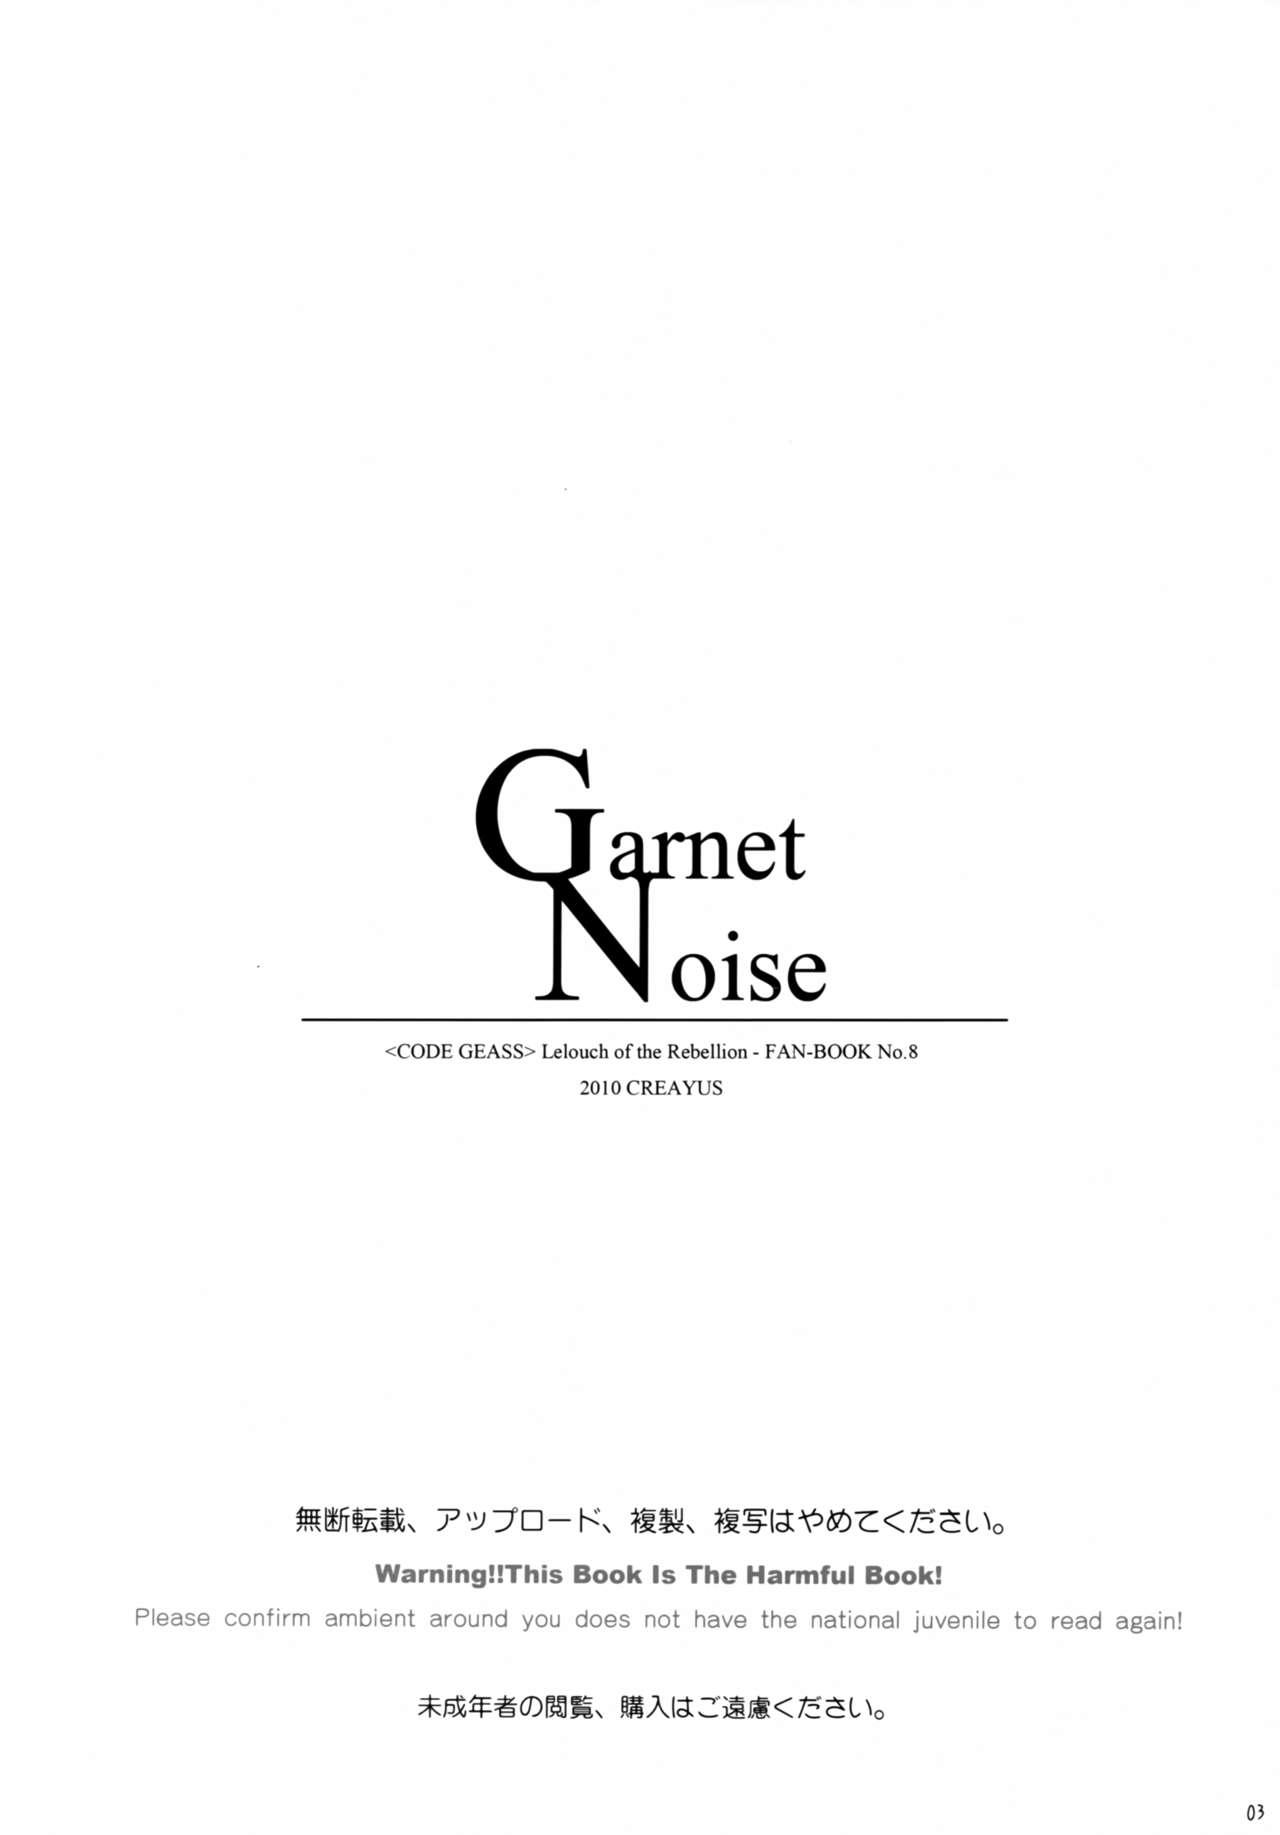 Garnet Noise 2